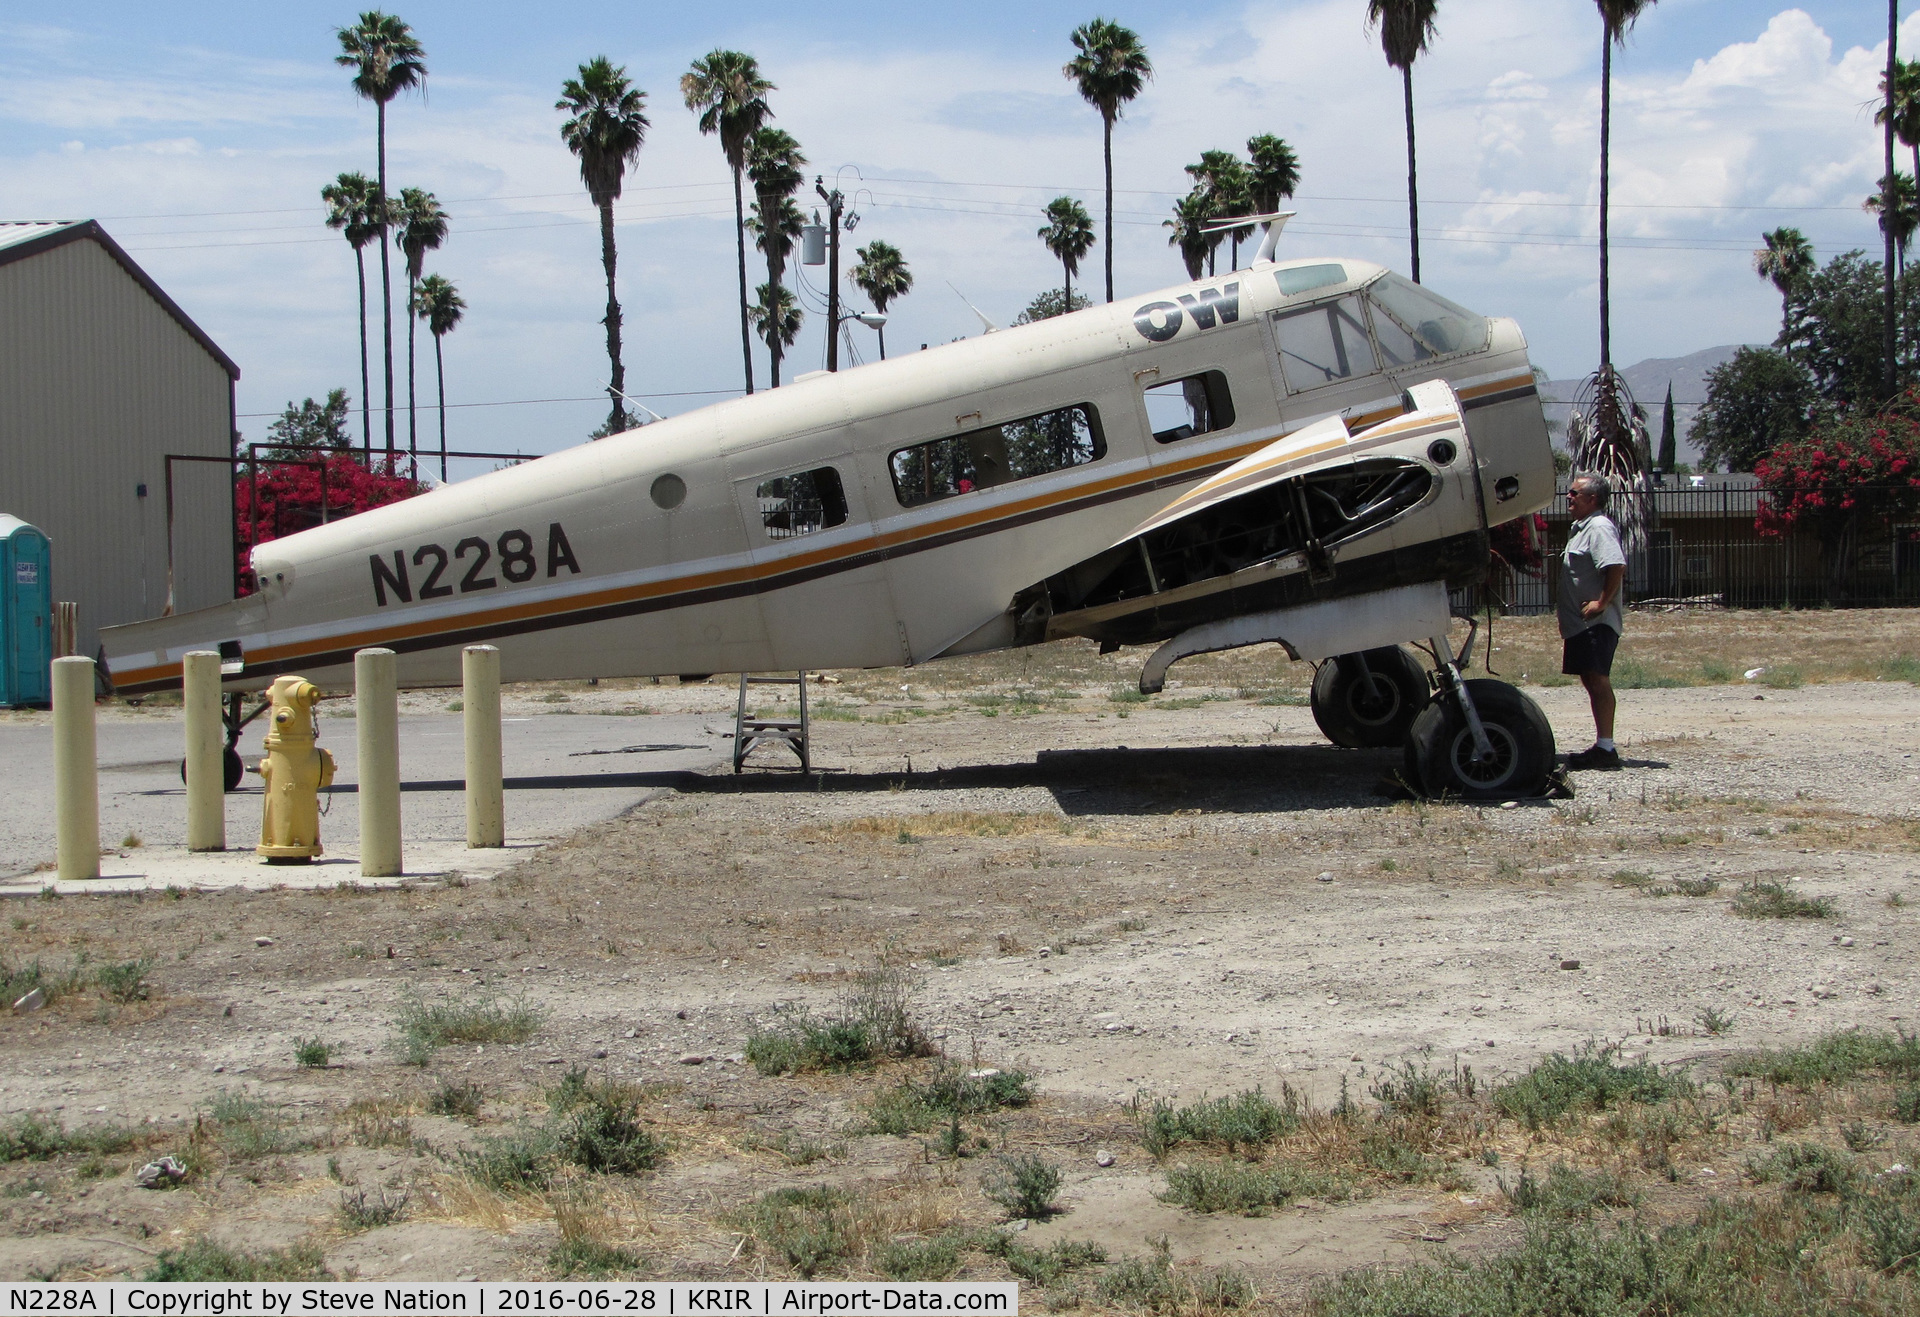 N228A, 1962 Beech H-18 C/N BA-629, 1962 Beech H-18 under restoration @ Flabob Airport, Riverside, CA 